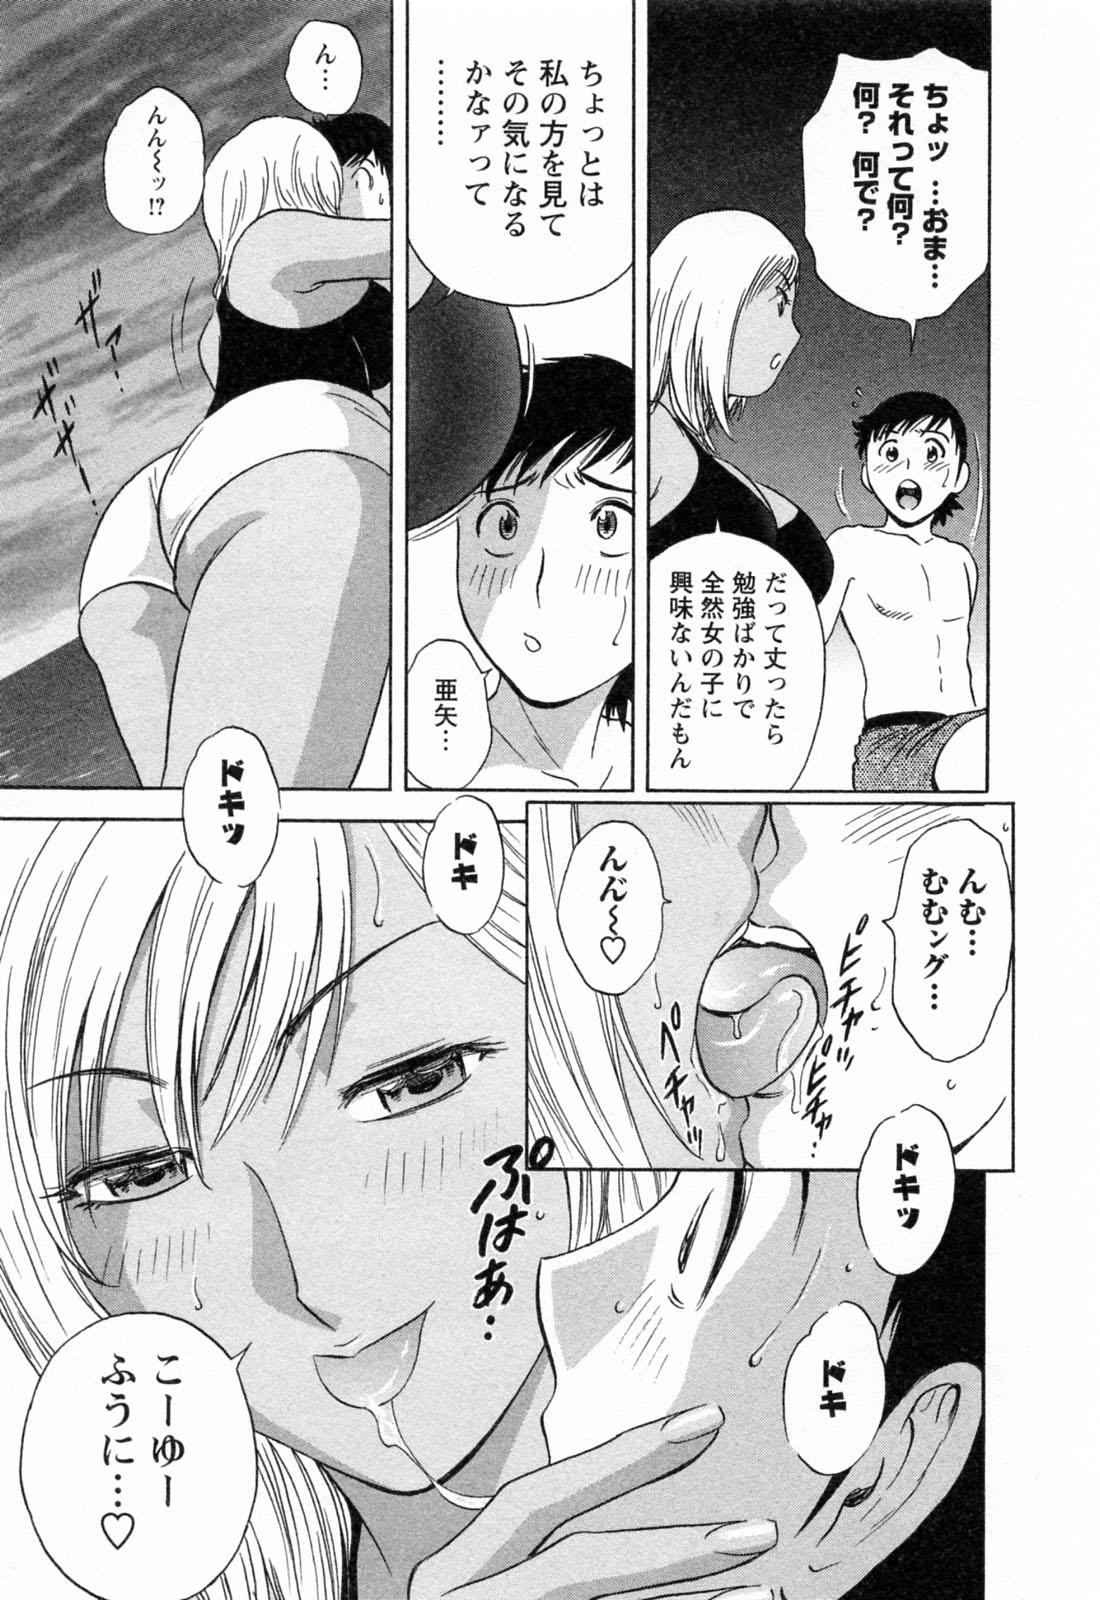 [Hidemaru] Mo-Retsu! Boin Sensei (Boing Boing Teacher) Vol.4 104